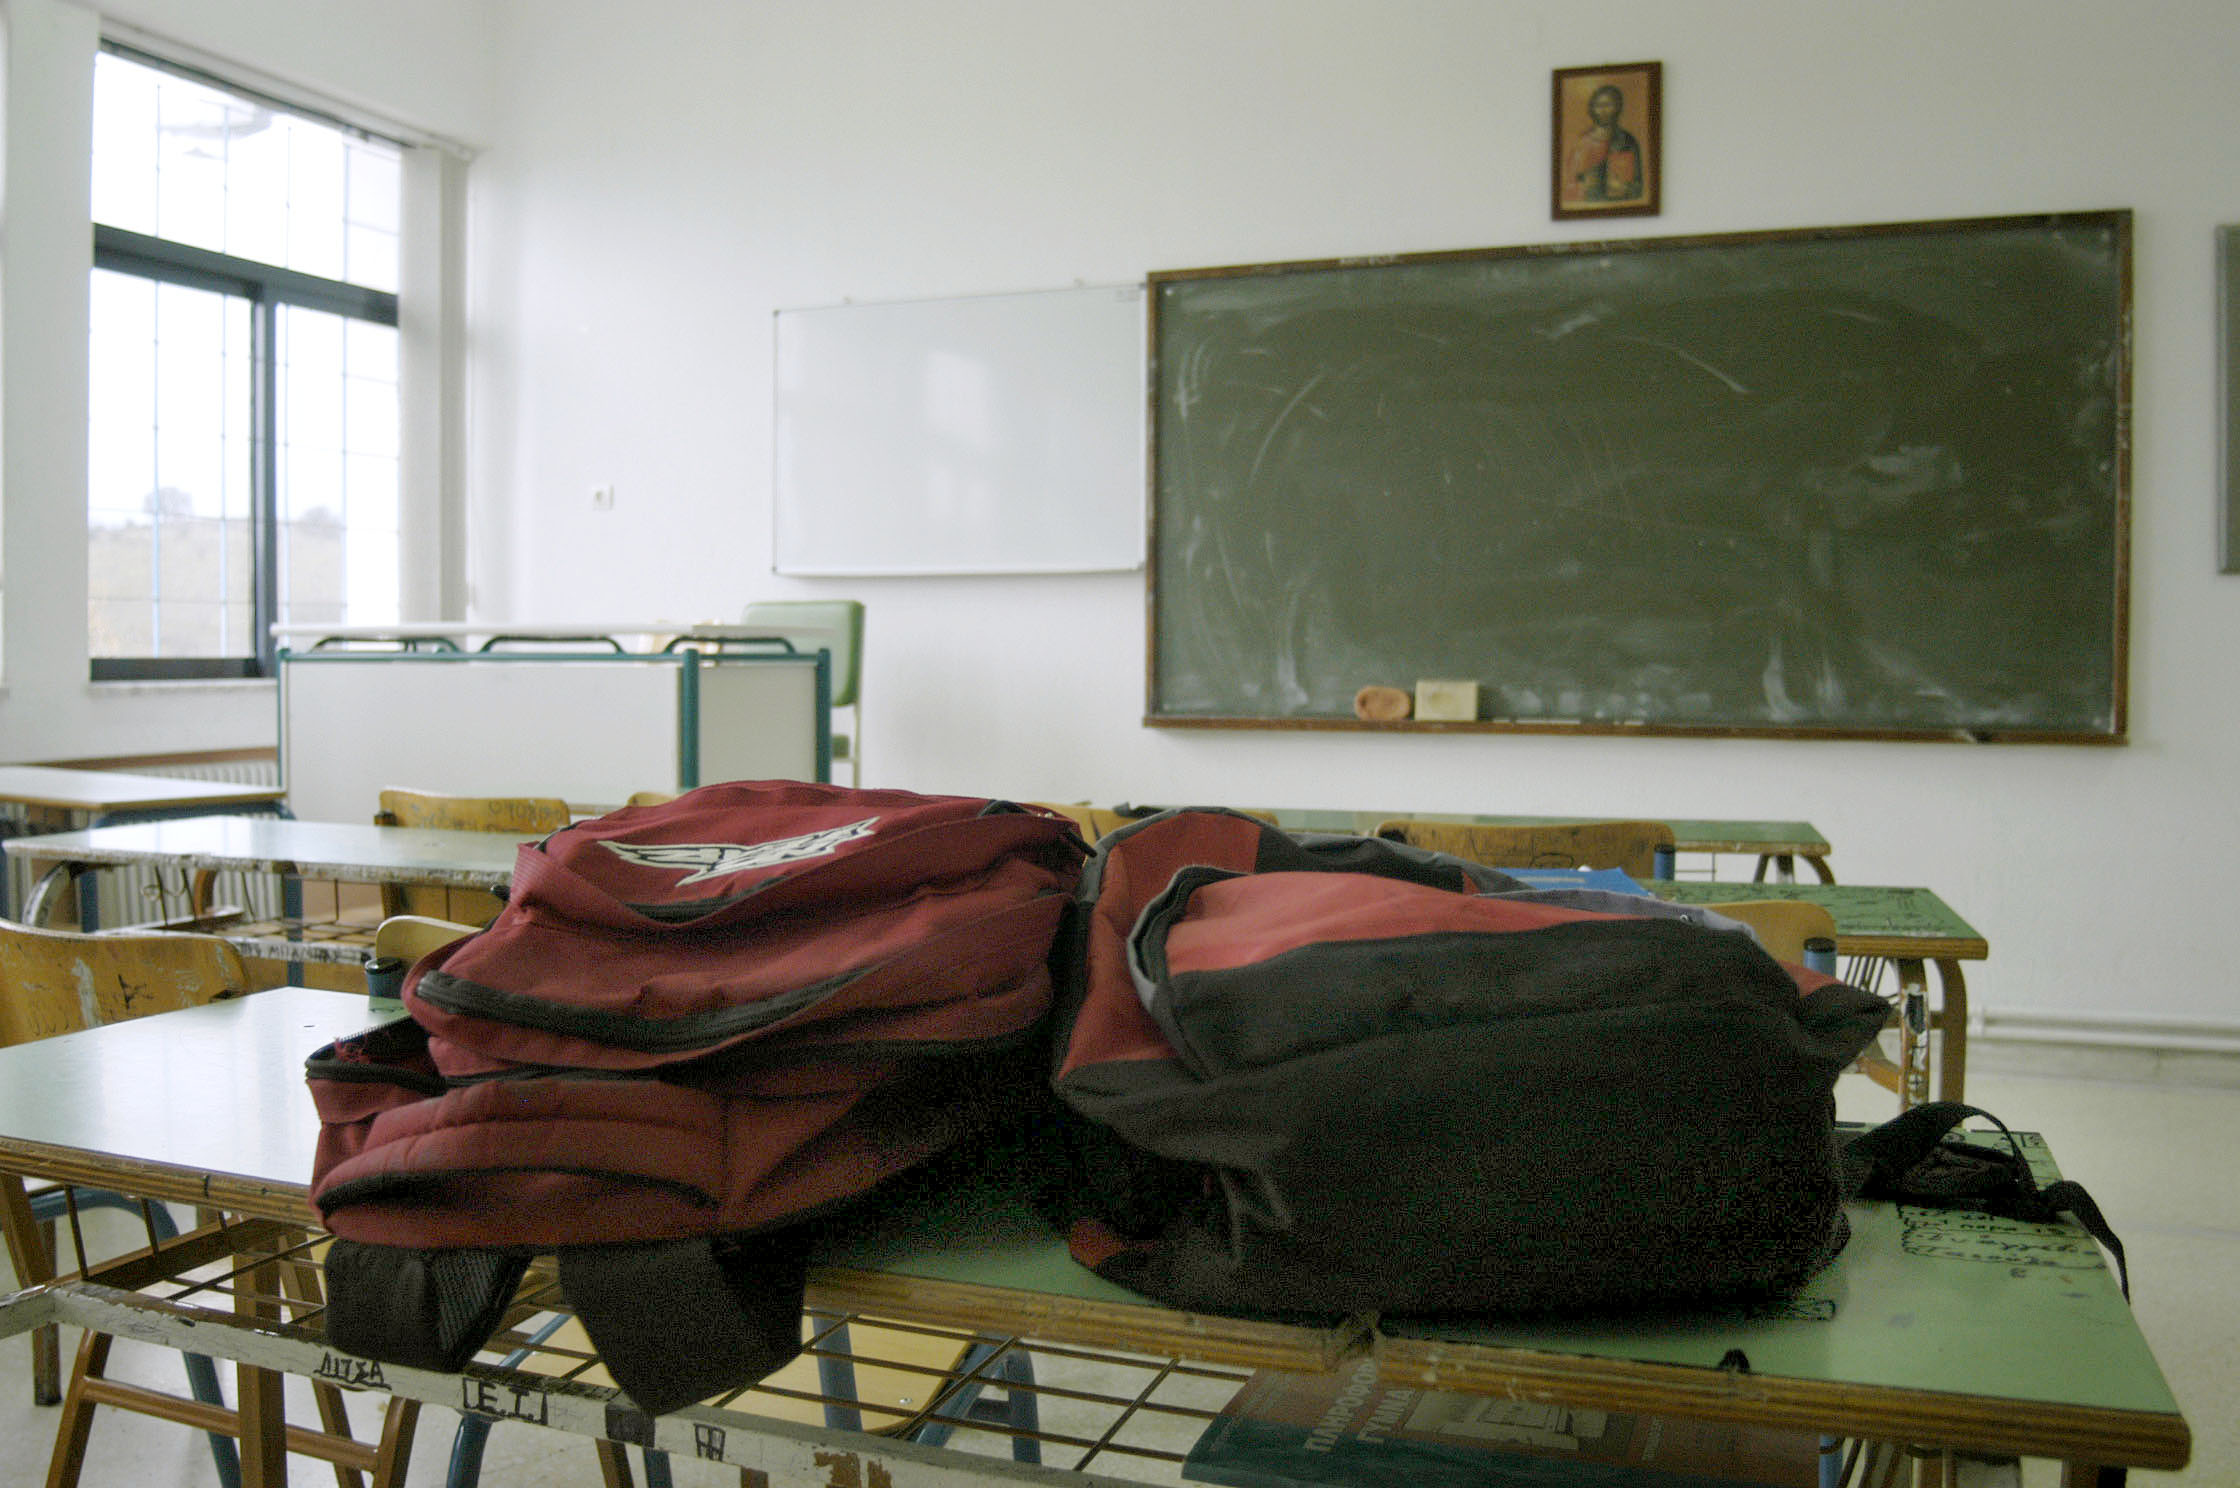 Θεσσαλονίκη: Σε περιπέτειες 17χρονος που έκανε φάρσα για τοποθέτηση βόμβας σε σχολείο